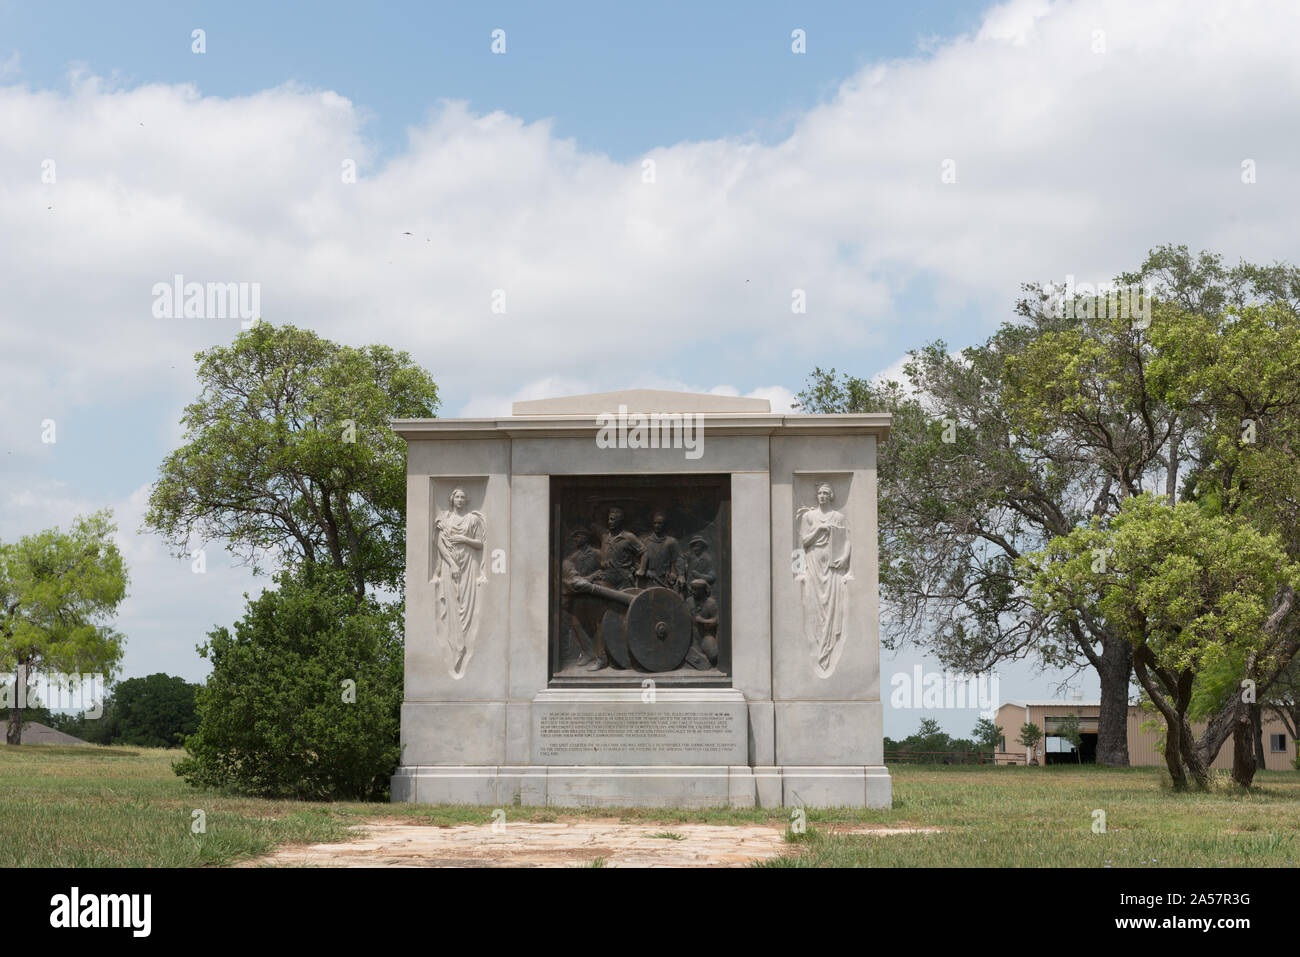 Waldine Tauch wurde durch die Texas Centennial Kommission gewählt zum Erstellen der ersten Schuß für die Unabhängigkeit von Texas (1935), ein Leben gefeuert - sortierte bronze Relief, in Granit sieben Meilen südwestlich von Gonzales, in der Nähe der Ort der Schlacht von Gonzales, die die Texas Revolution entzündet Stockfoto